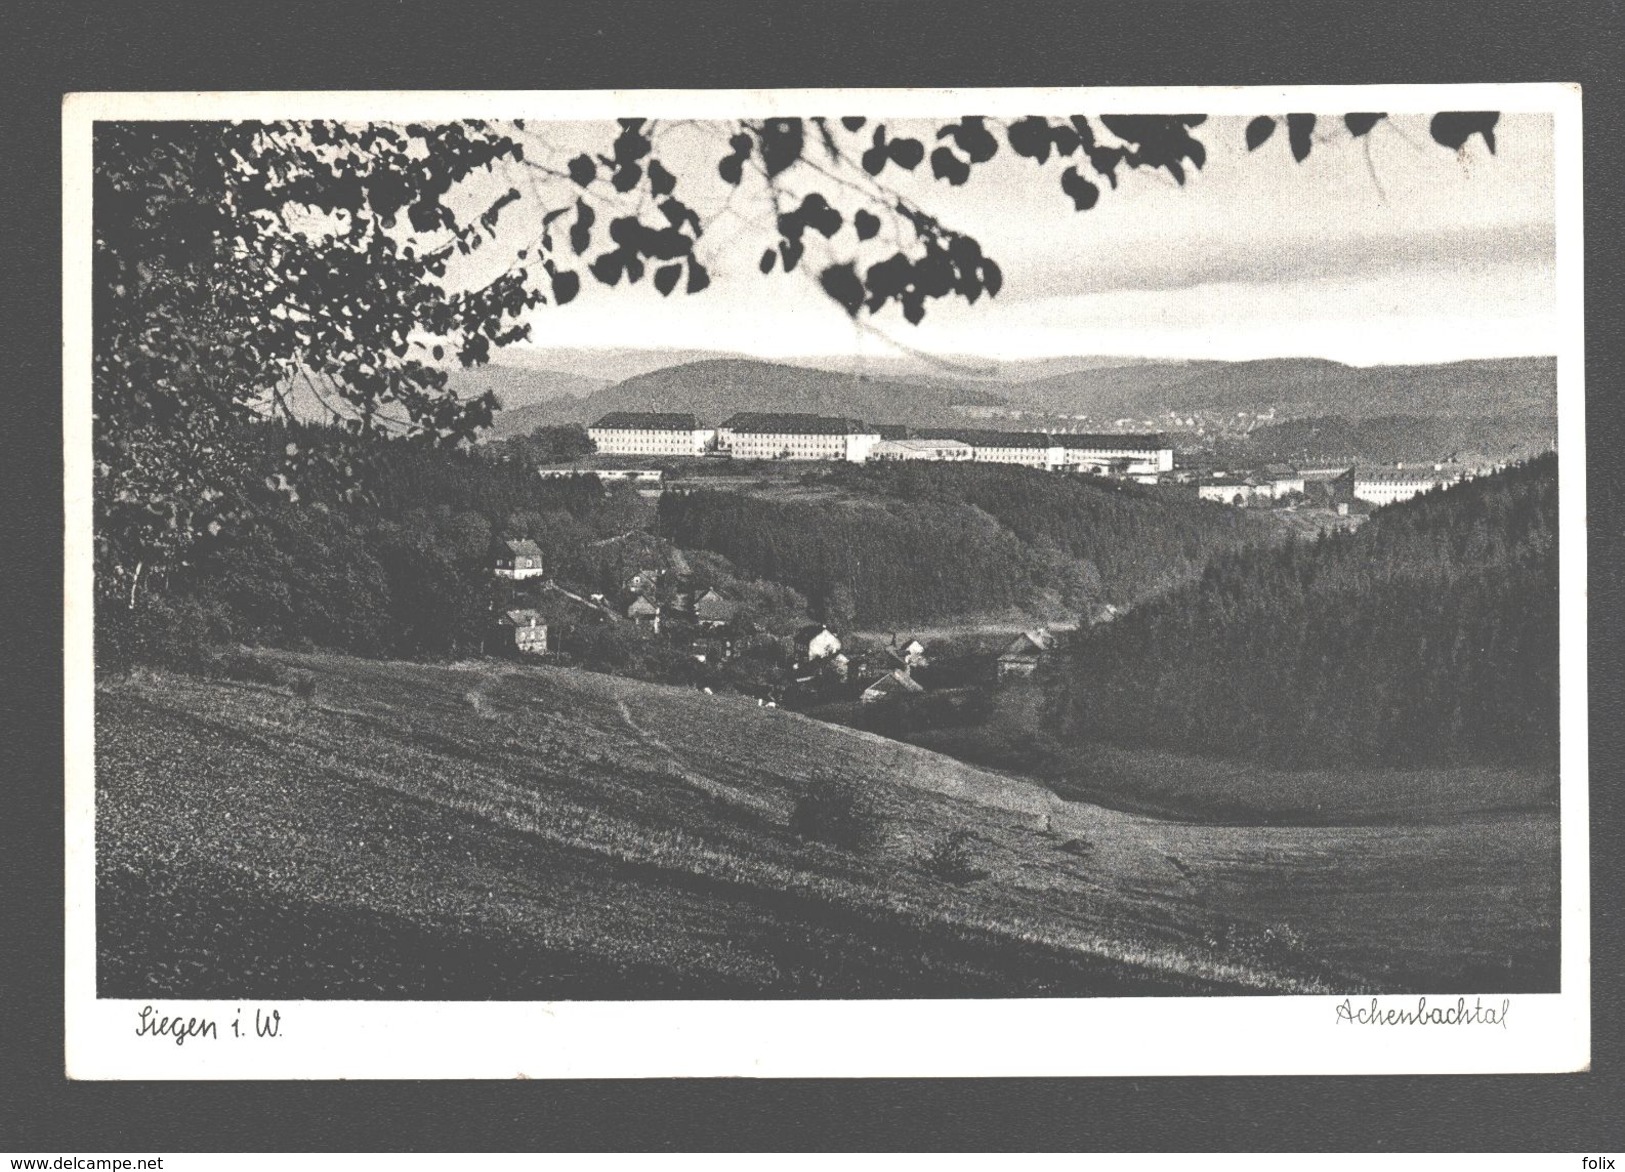 Siegen I. W. - Achenbachtal - 1953 - Militärstempel - Siegen